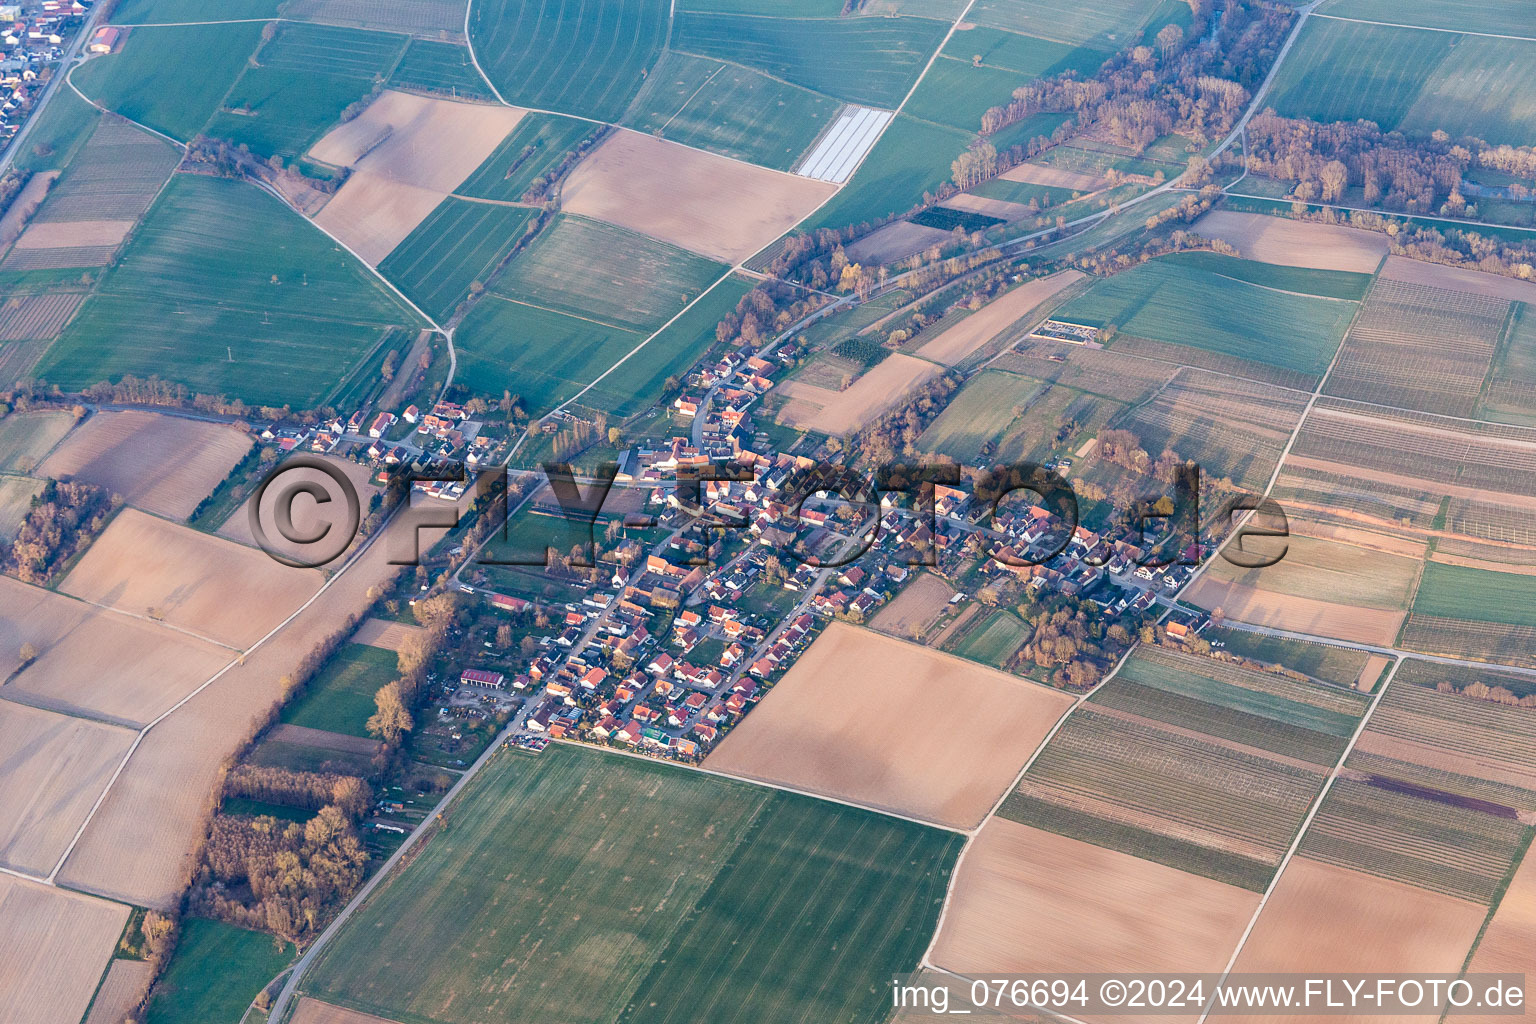 Luftbild von Ortsteil Kleinsteinfeld in Niederotterbach im Bundesland Rheinland-Pfalz, Deutschland